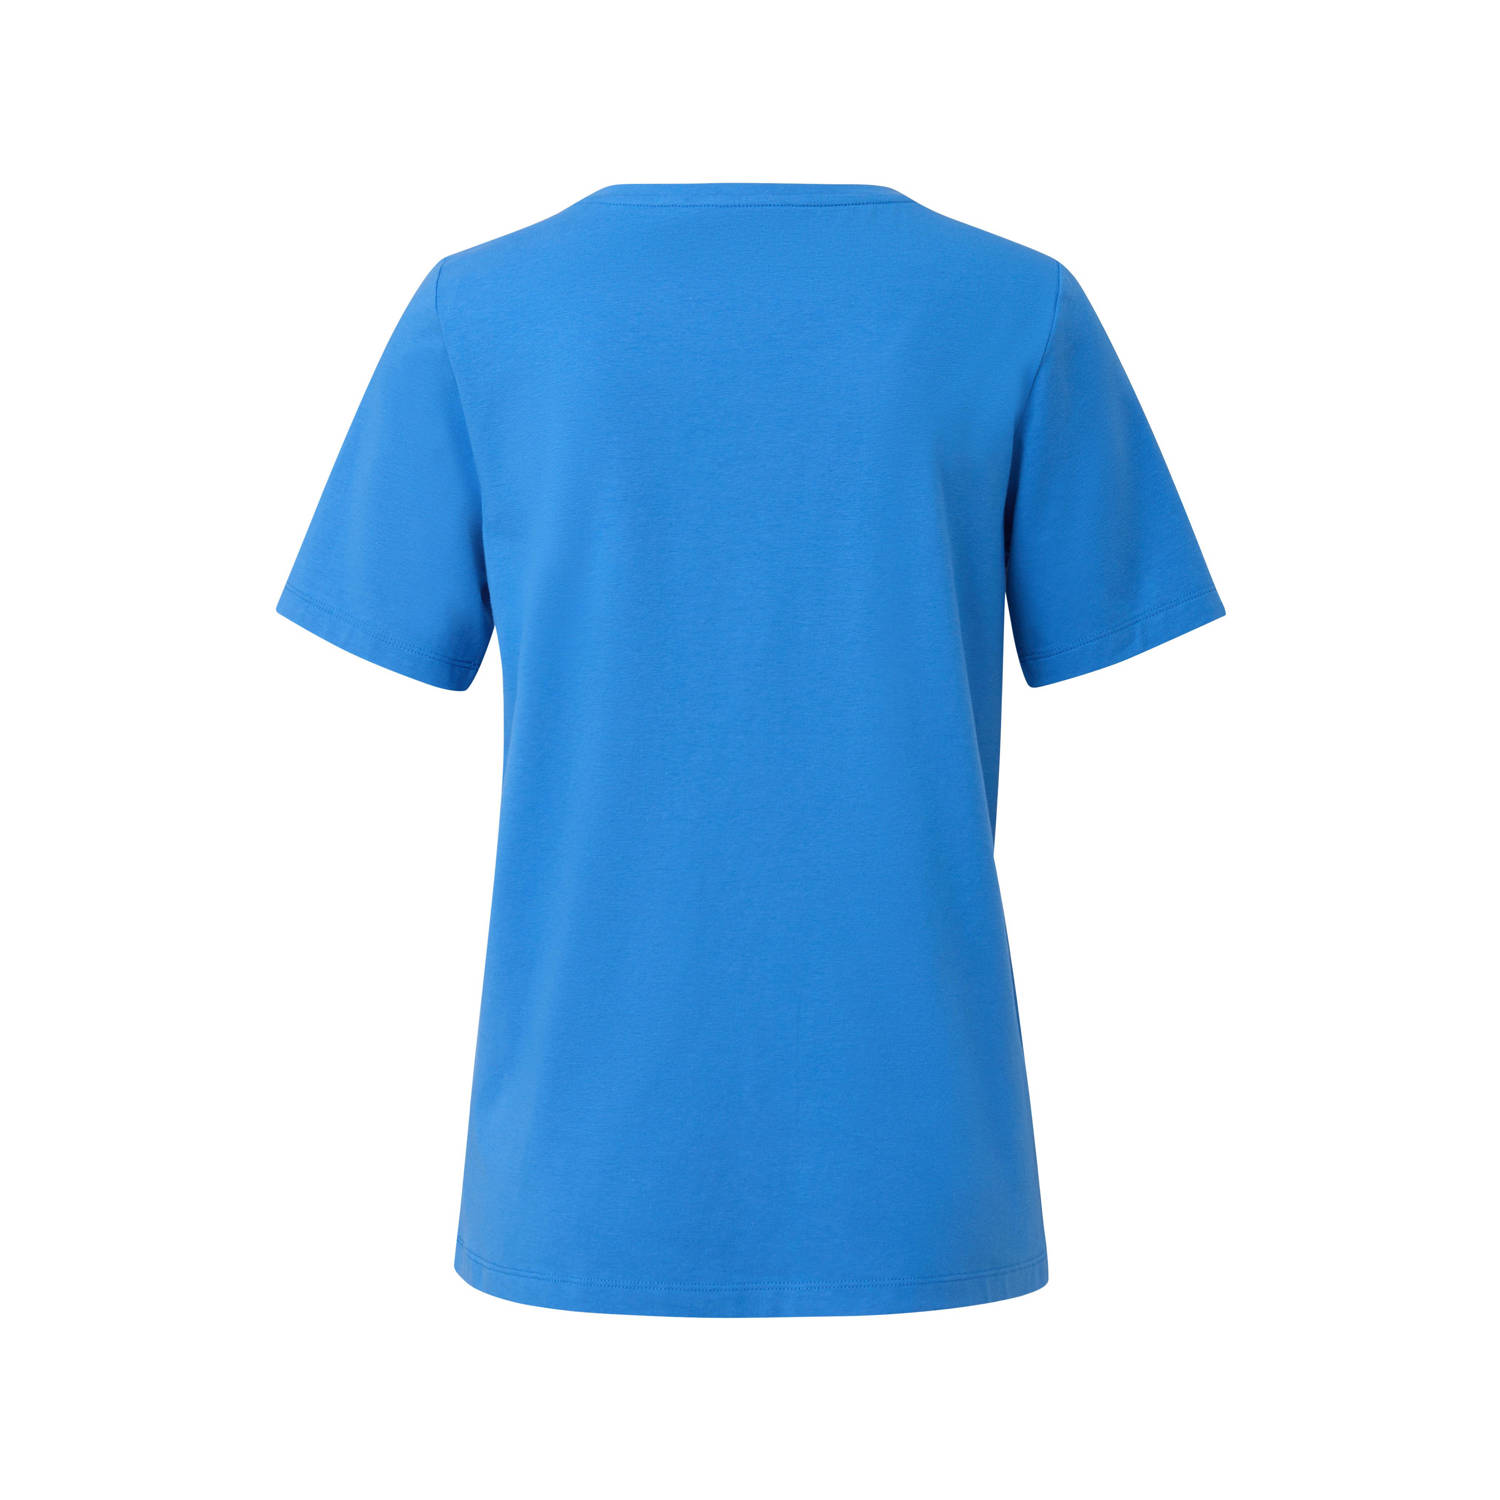 s.Oliver T-shirt met tekst blauw